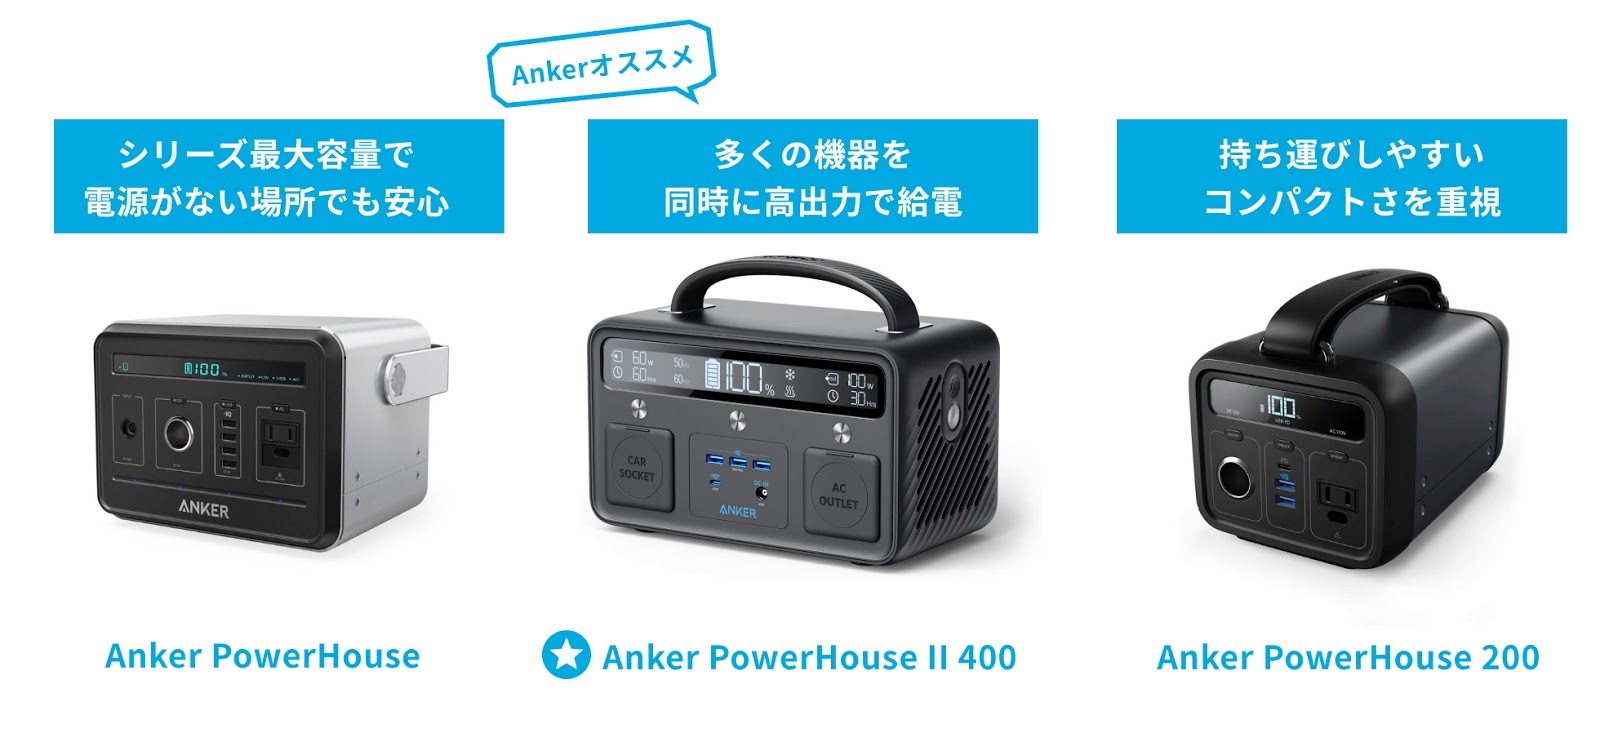 アンカー ANKER Power House A1701 ポータブル電源 大容量モバイル 